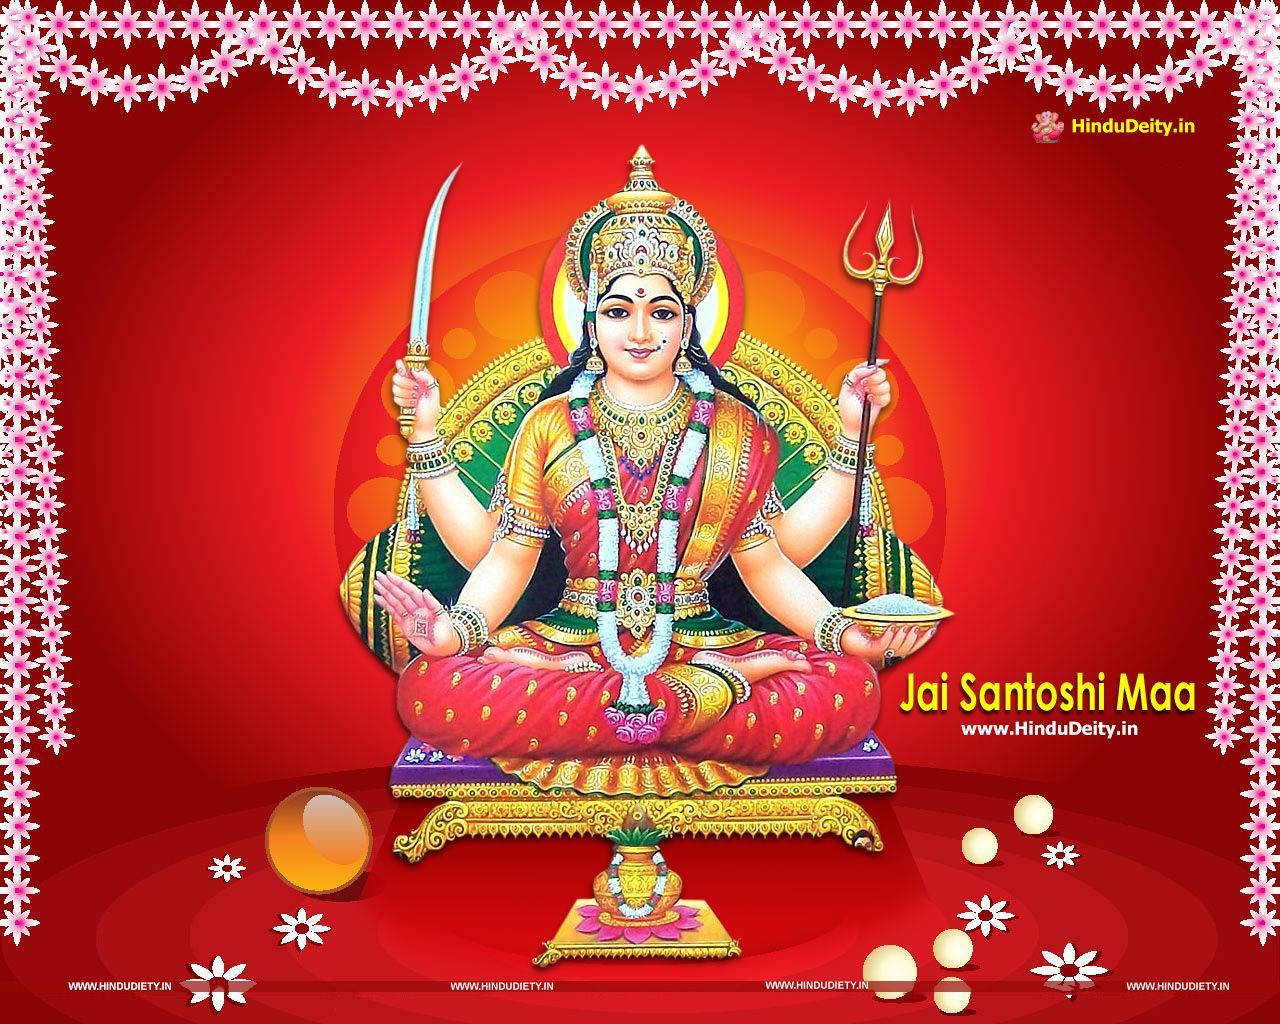 Santoshi Maa Or Santoshi Mata Goddess